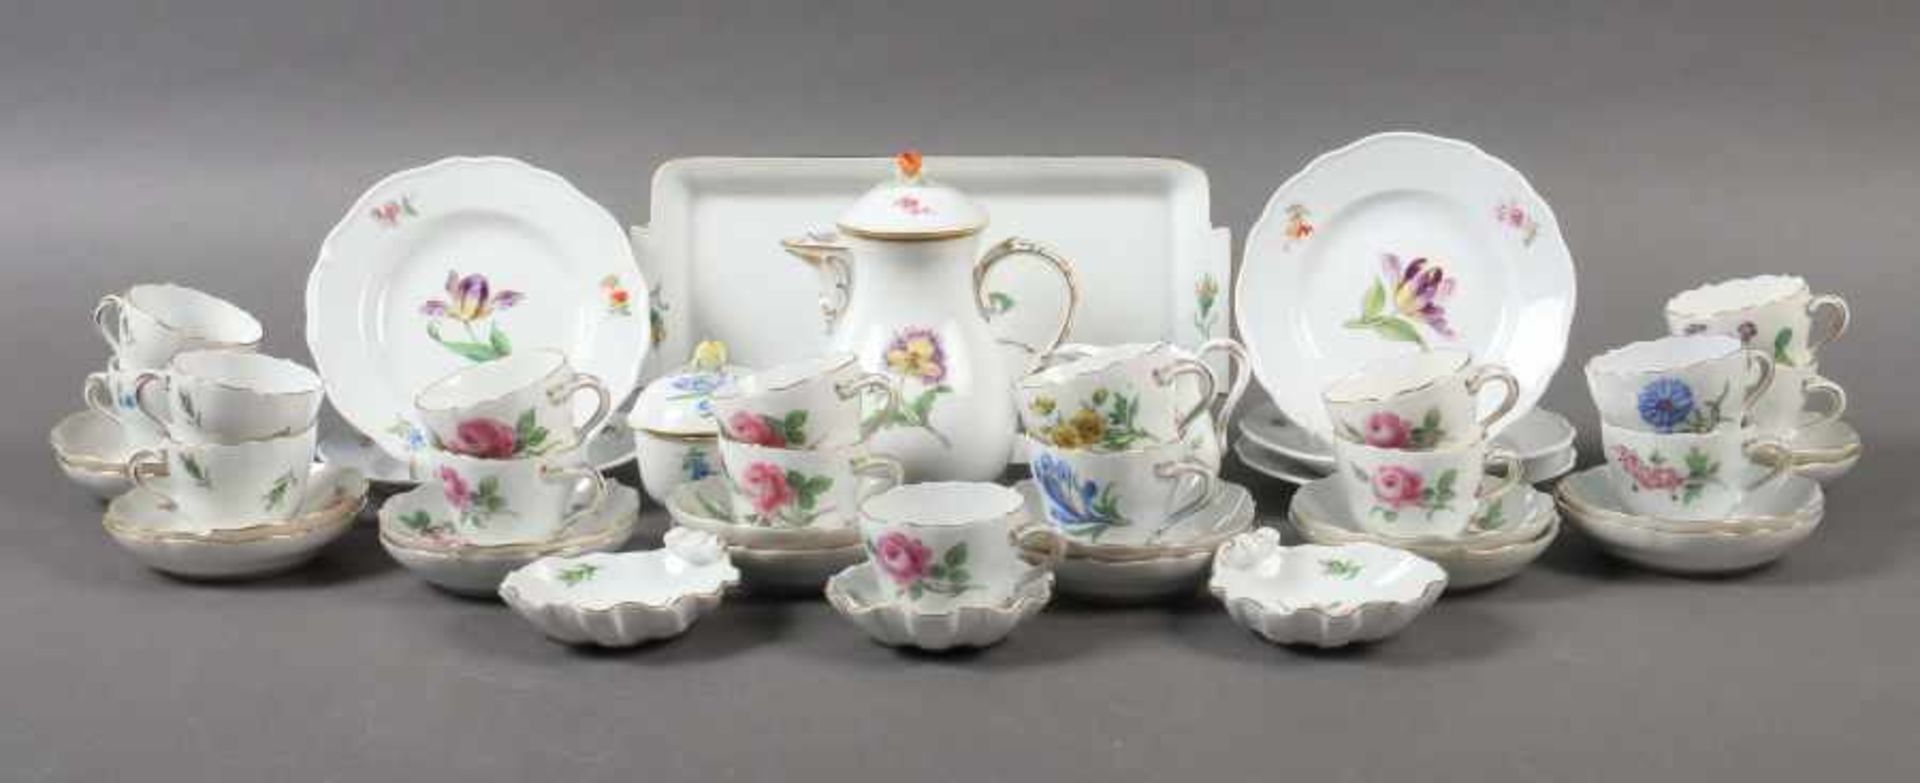 Mokkaserviceteile mit variierenden BlumendekorenMeissen, zumeist 1953-96, wenige Teile 1860-1924,